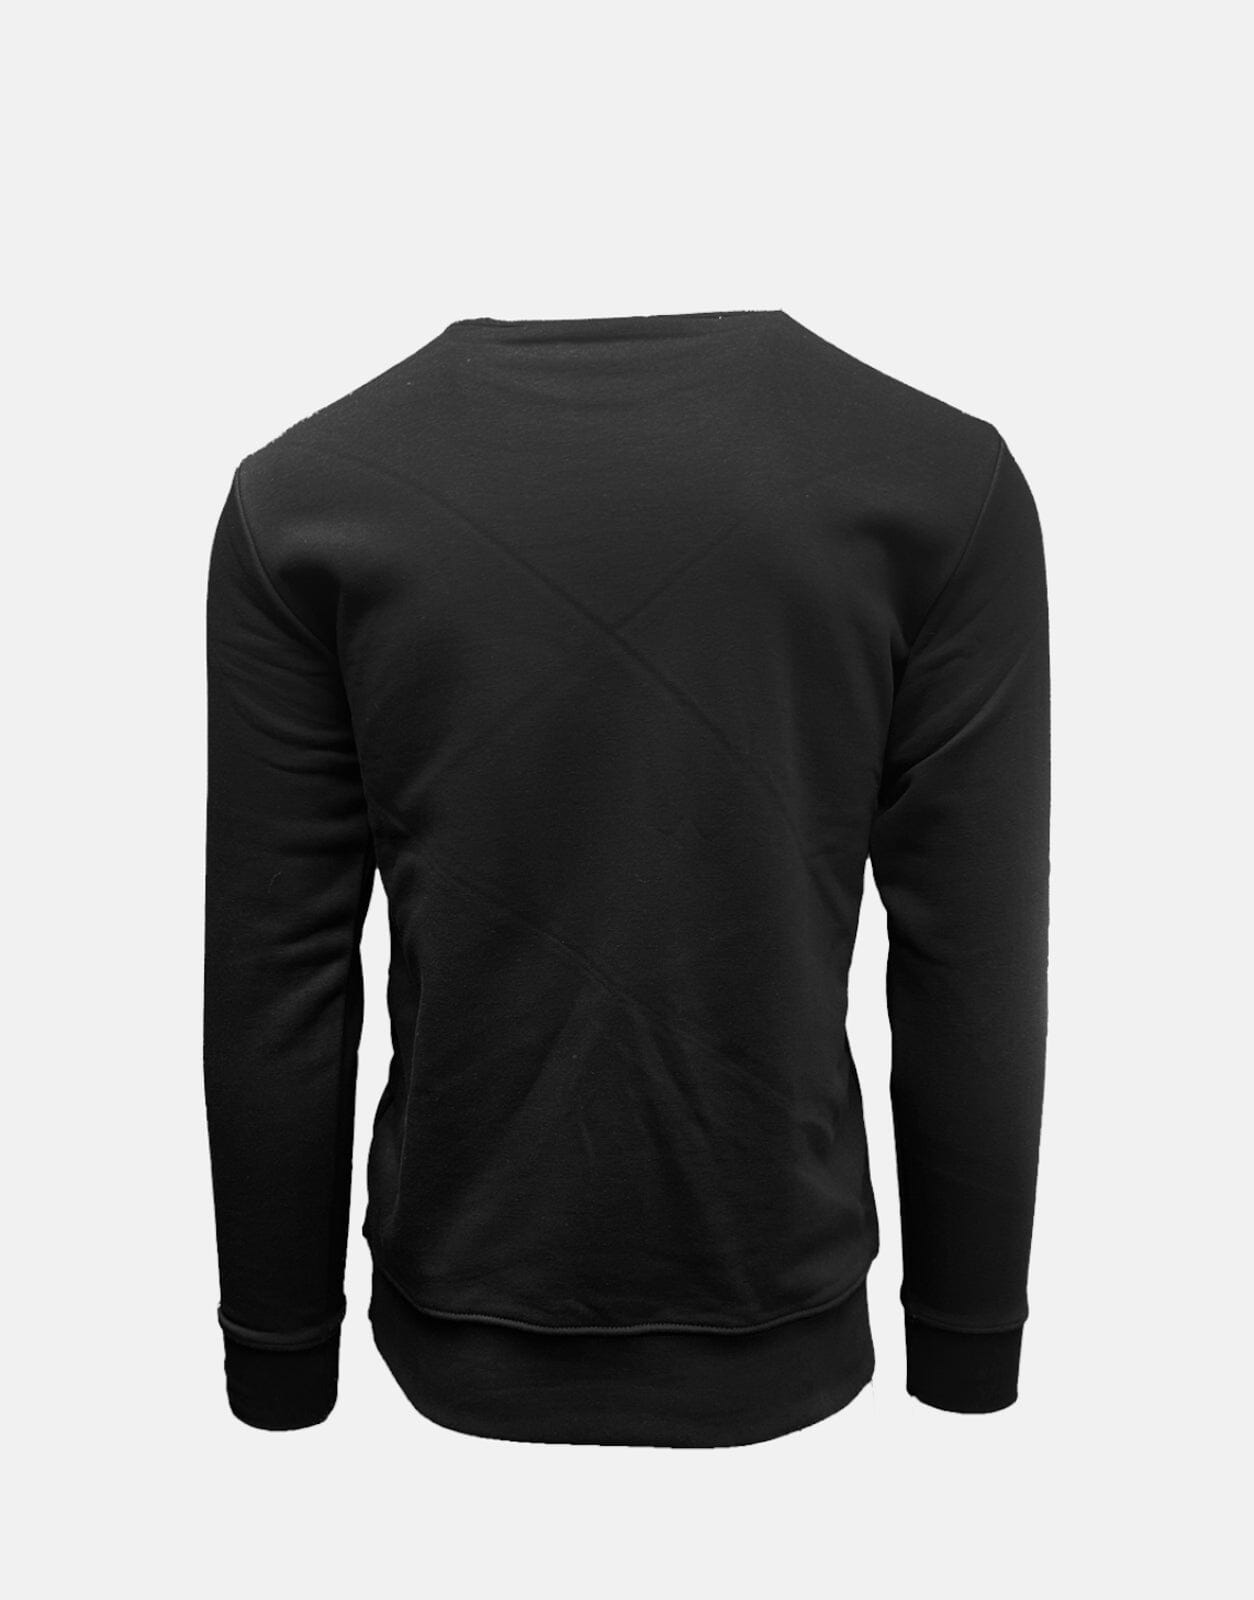 Vialli Gevano Black Sweatshirt - Subwear